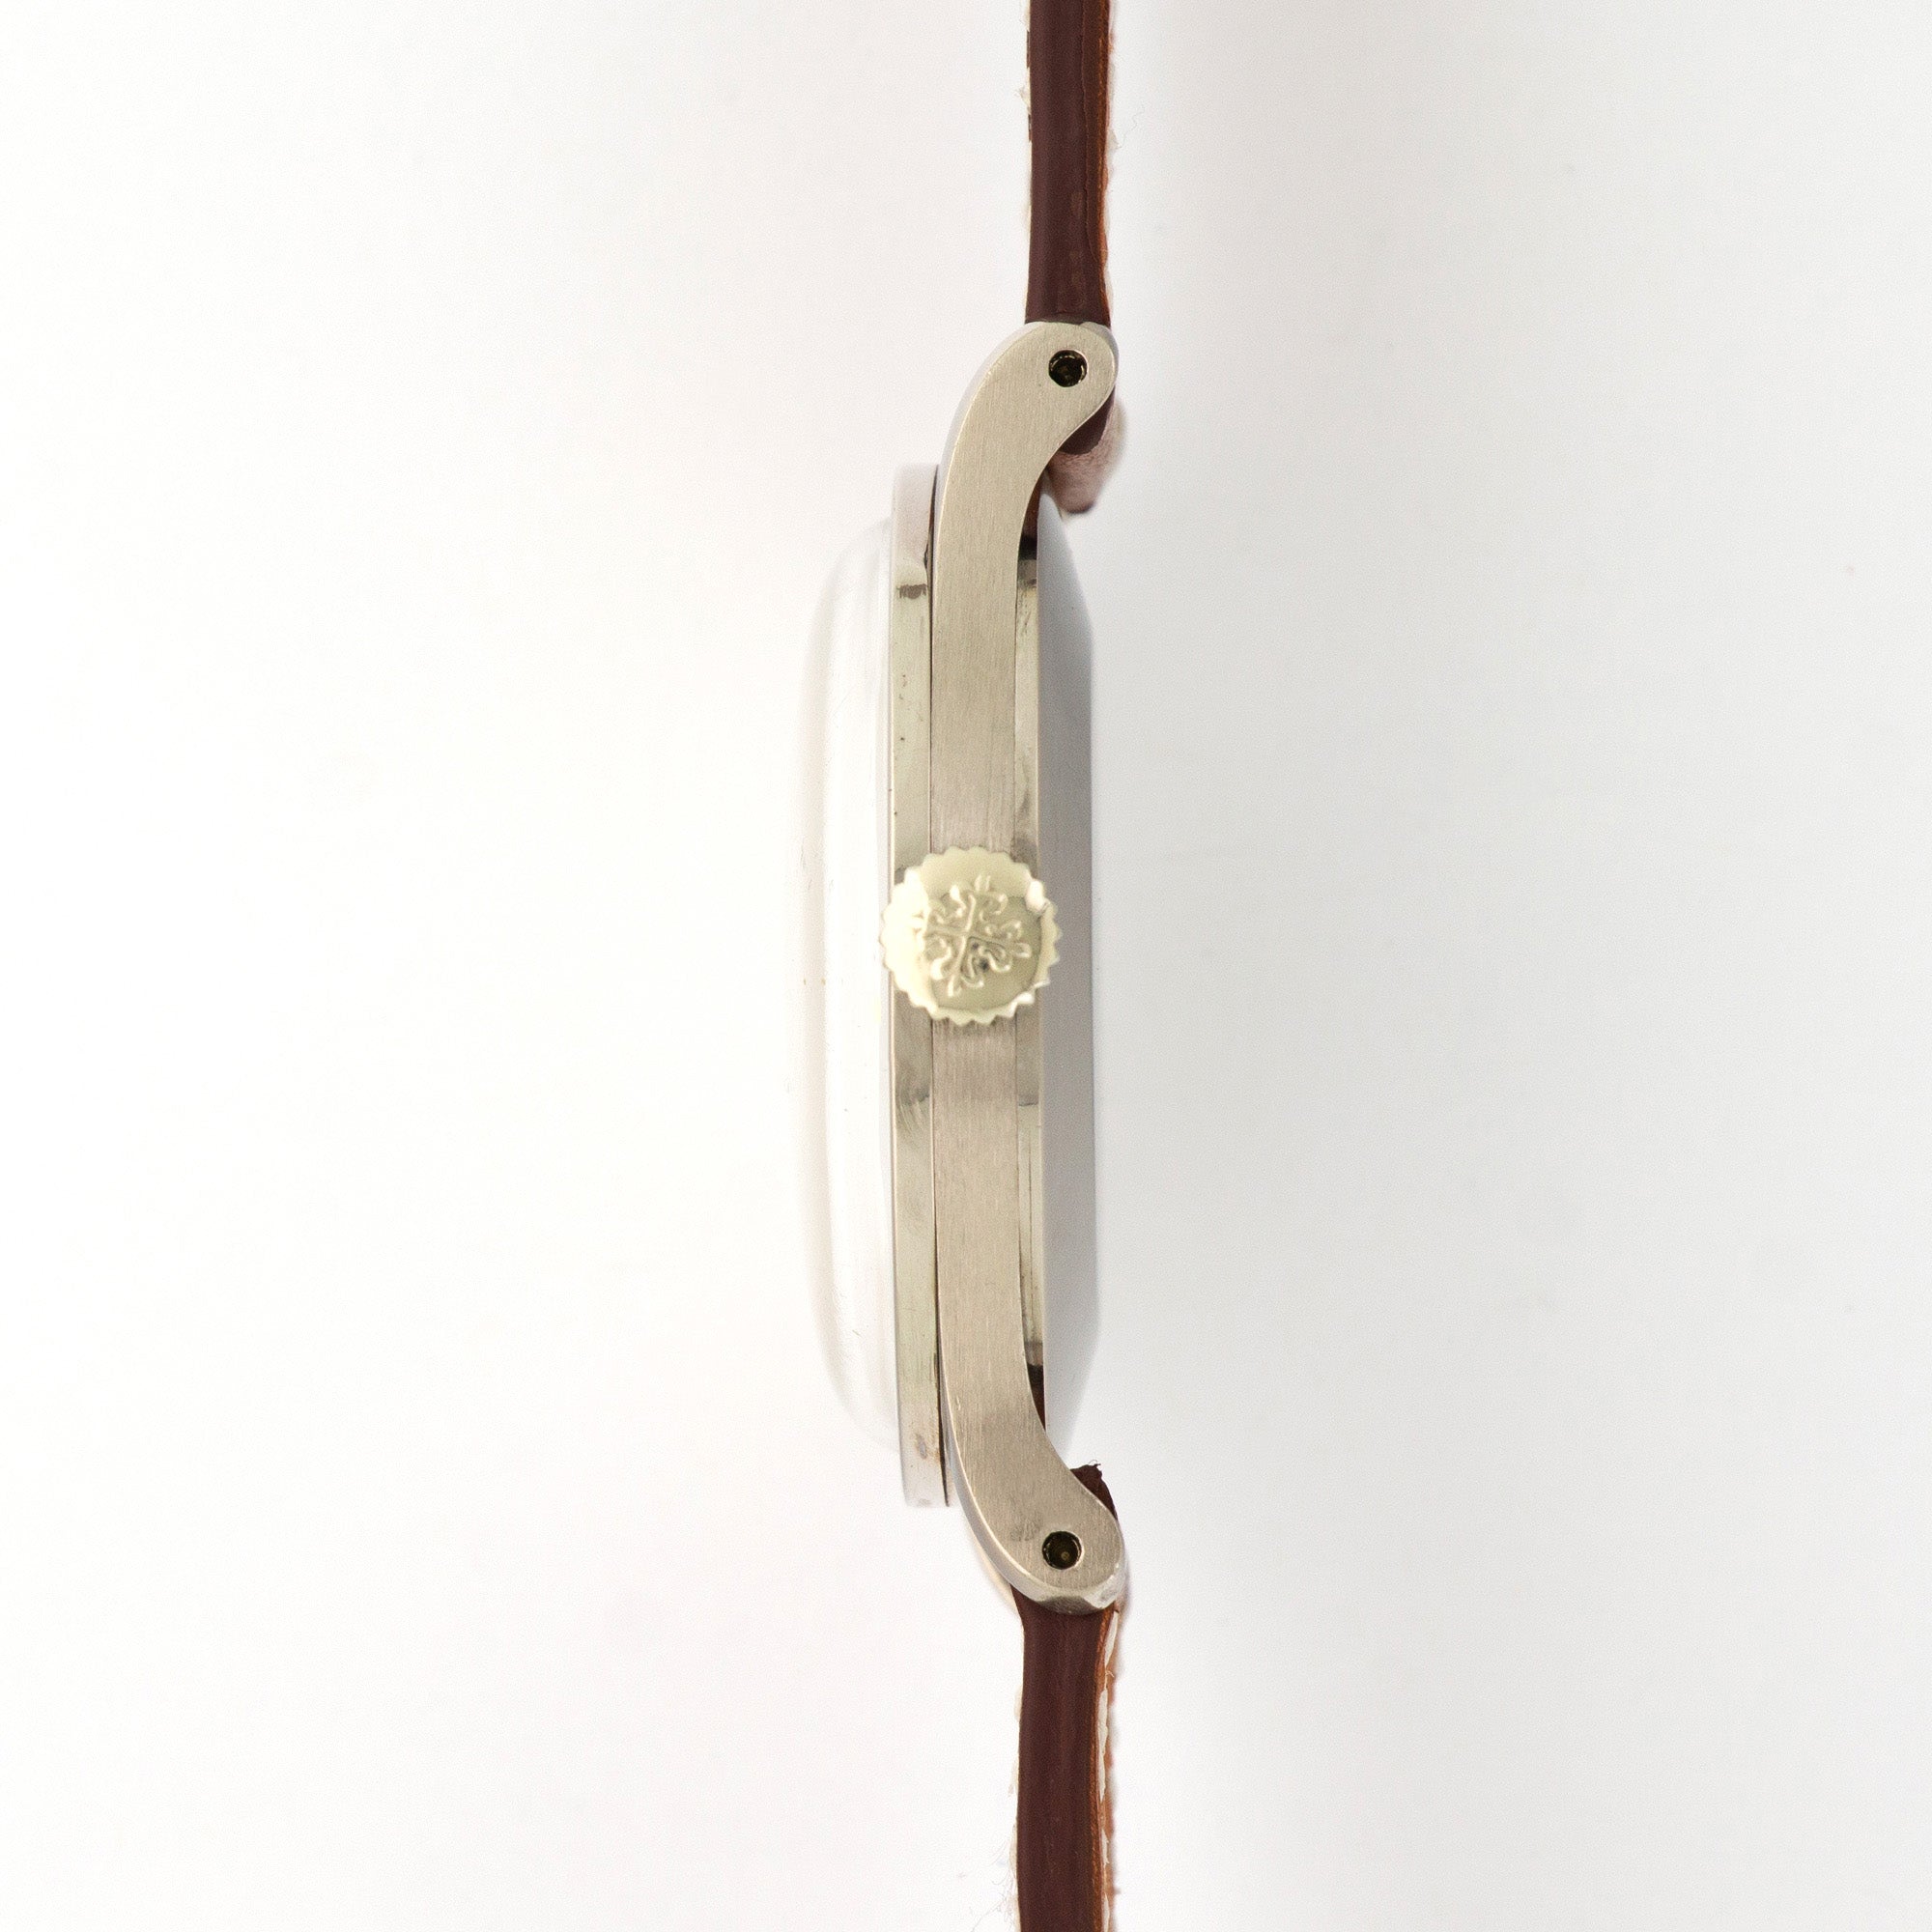 Patek Philippe - Patek Philippe White Gold Calatrava Watch Ref. 570 - The Keystone Watches